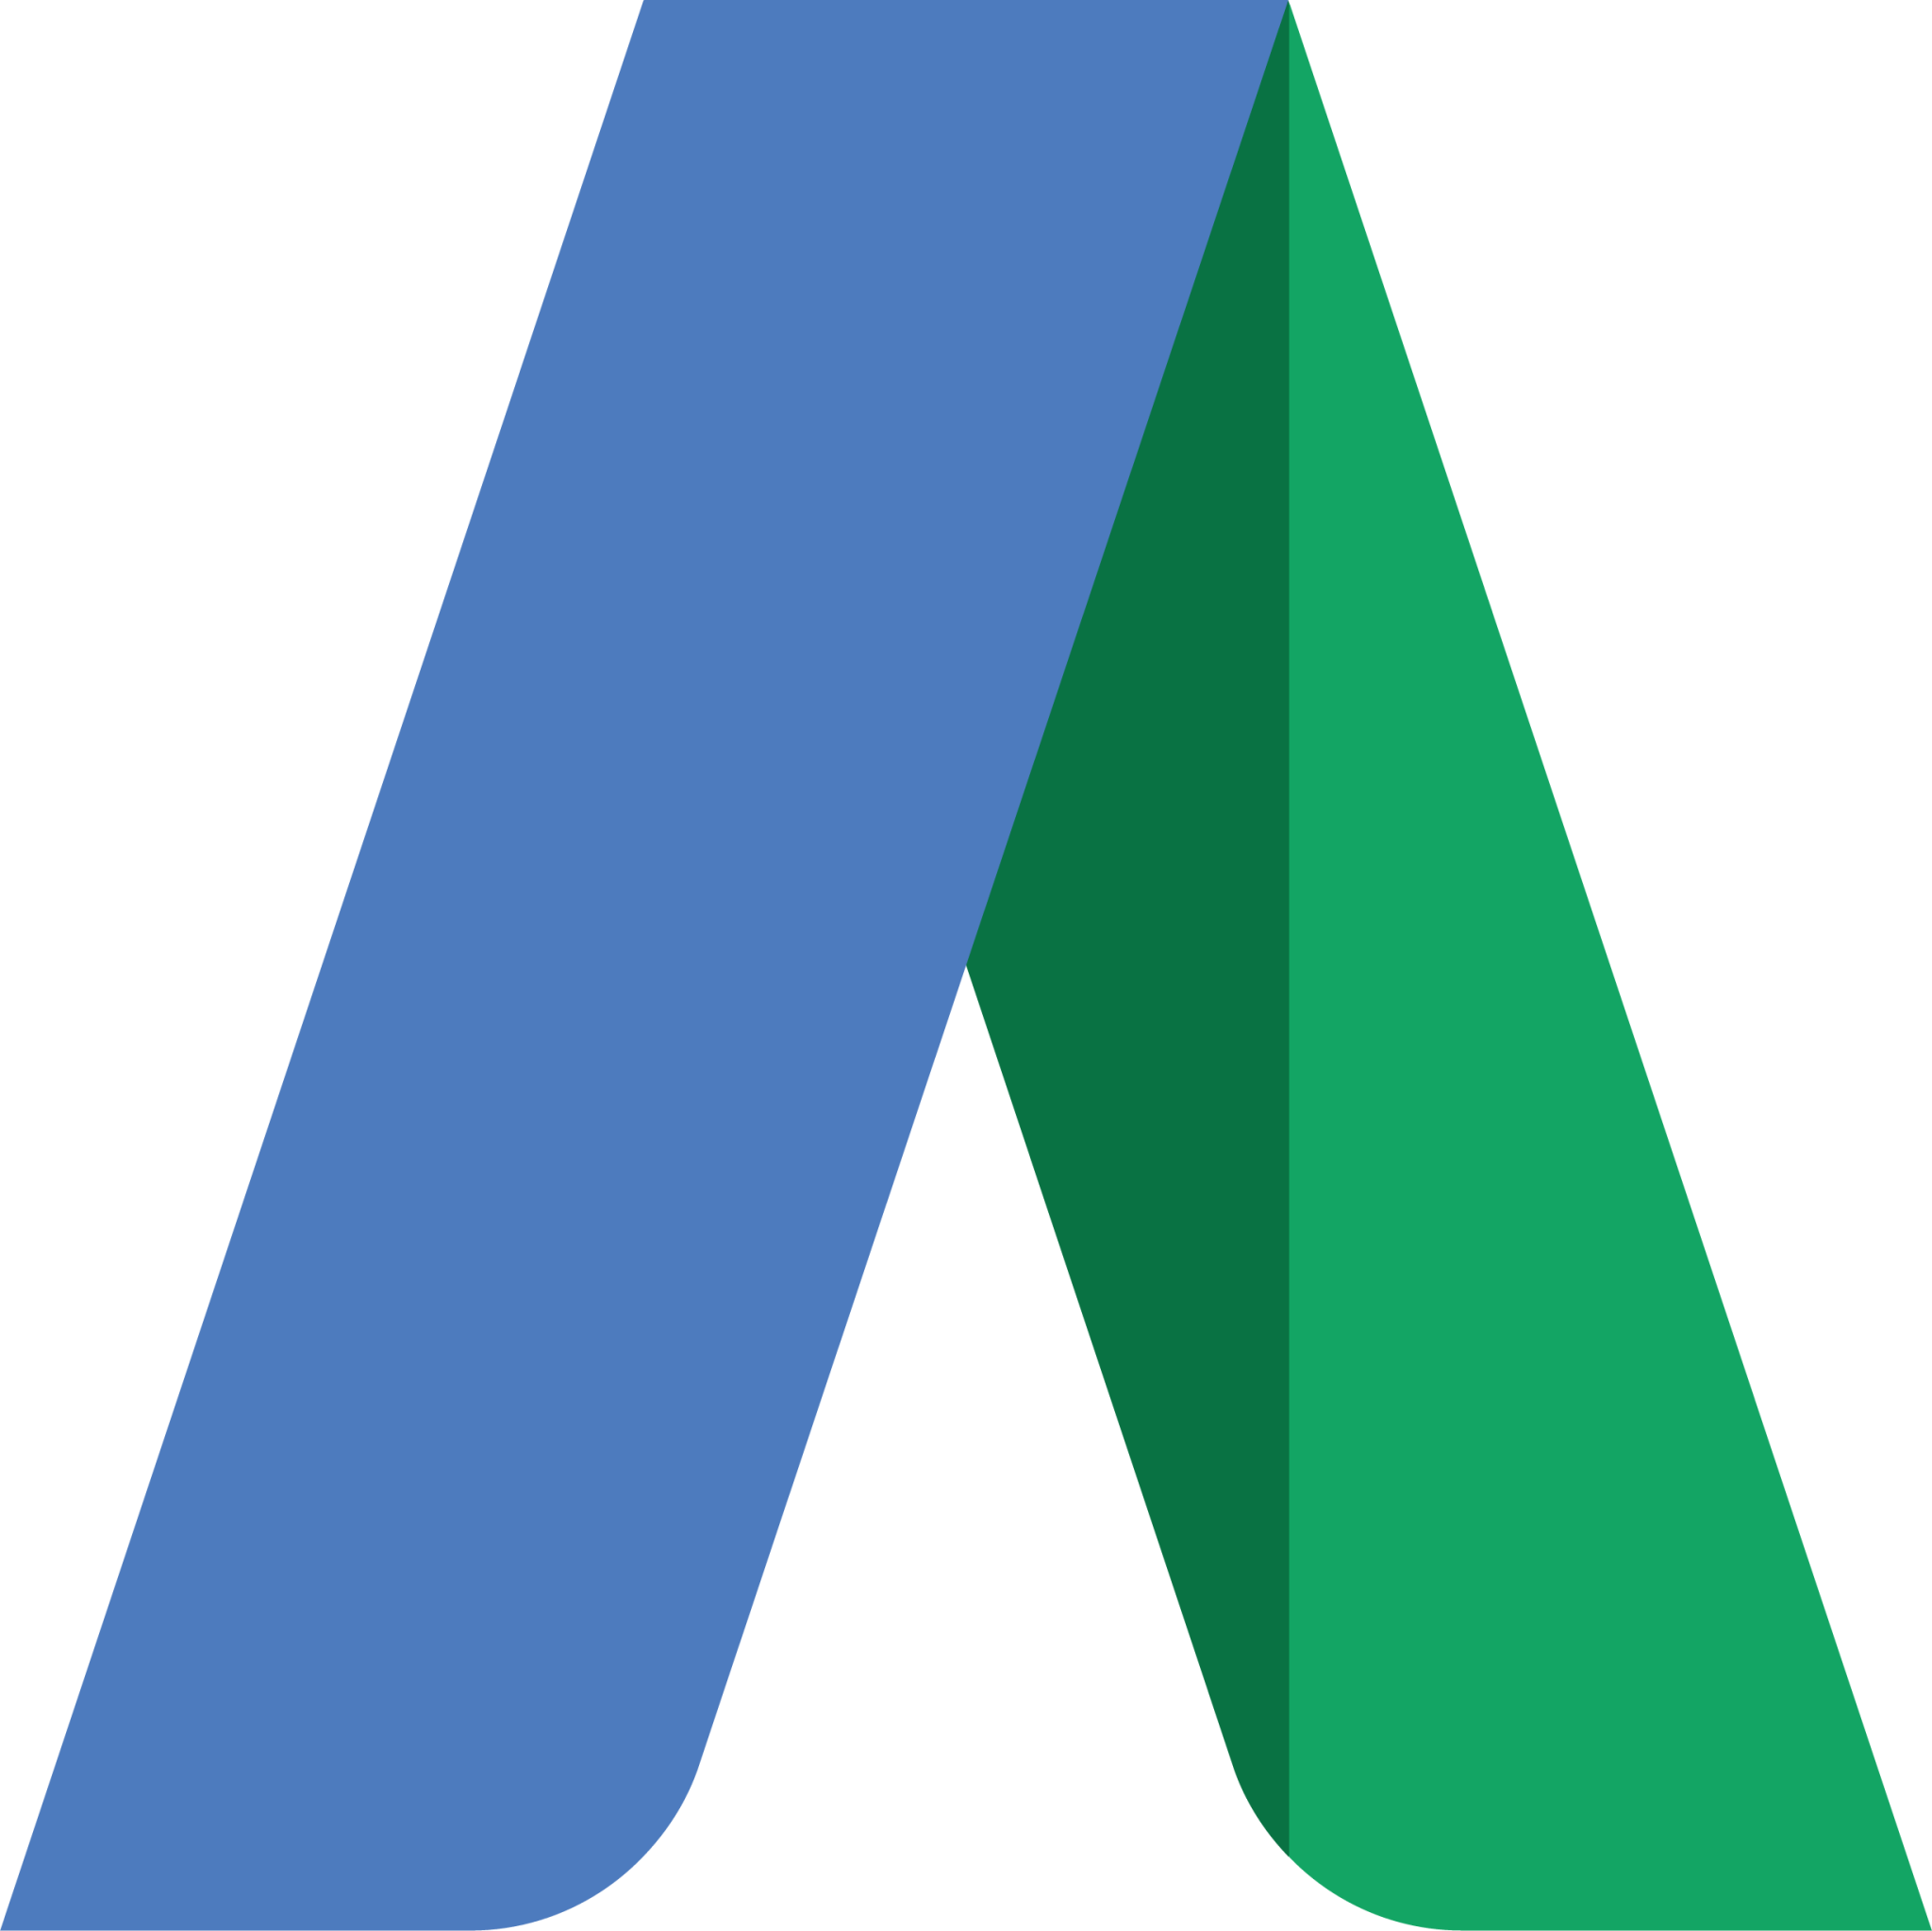 Google AdWords icon